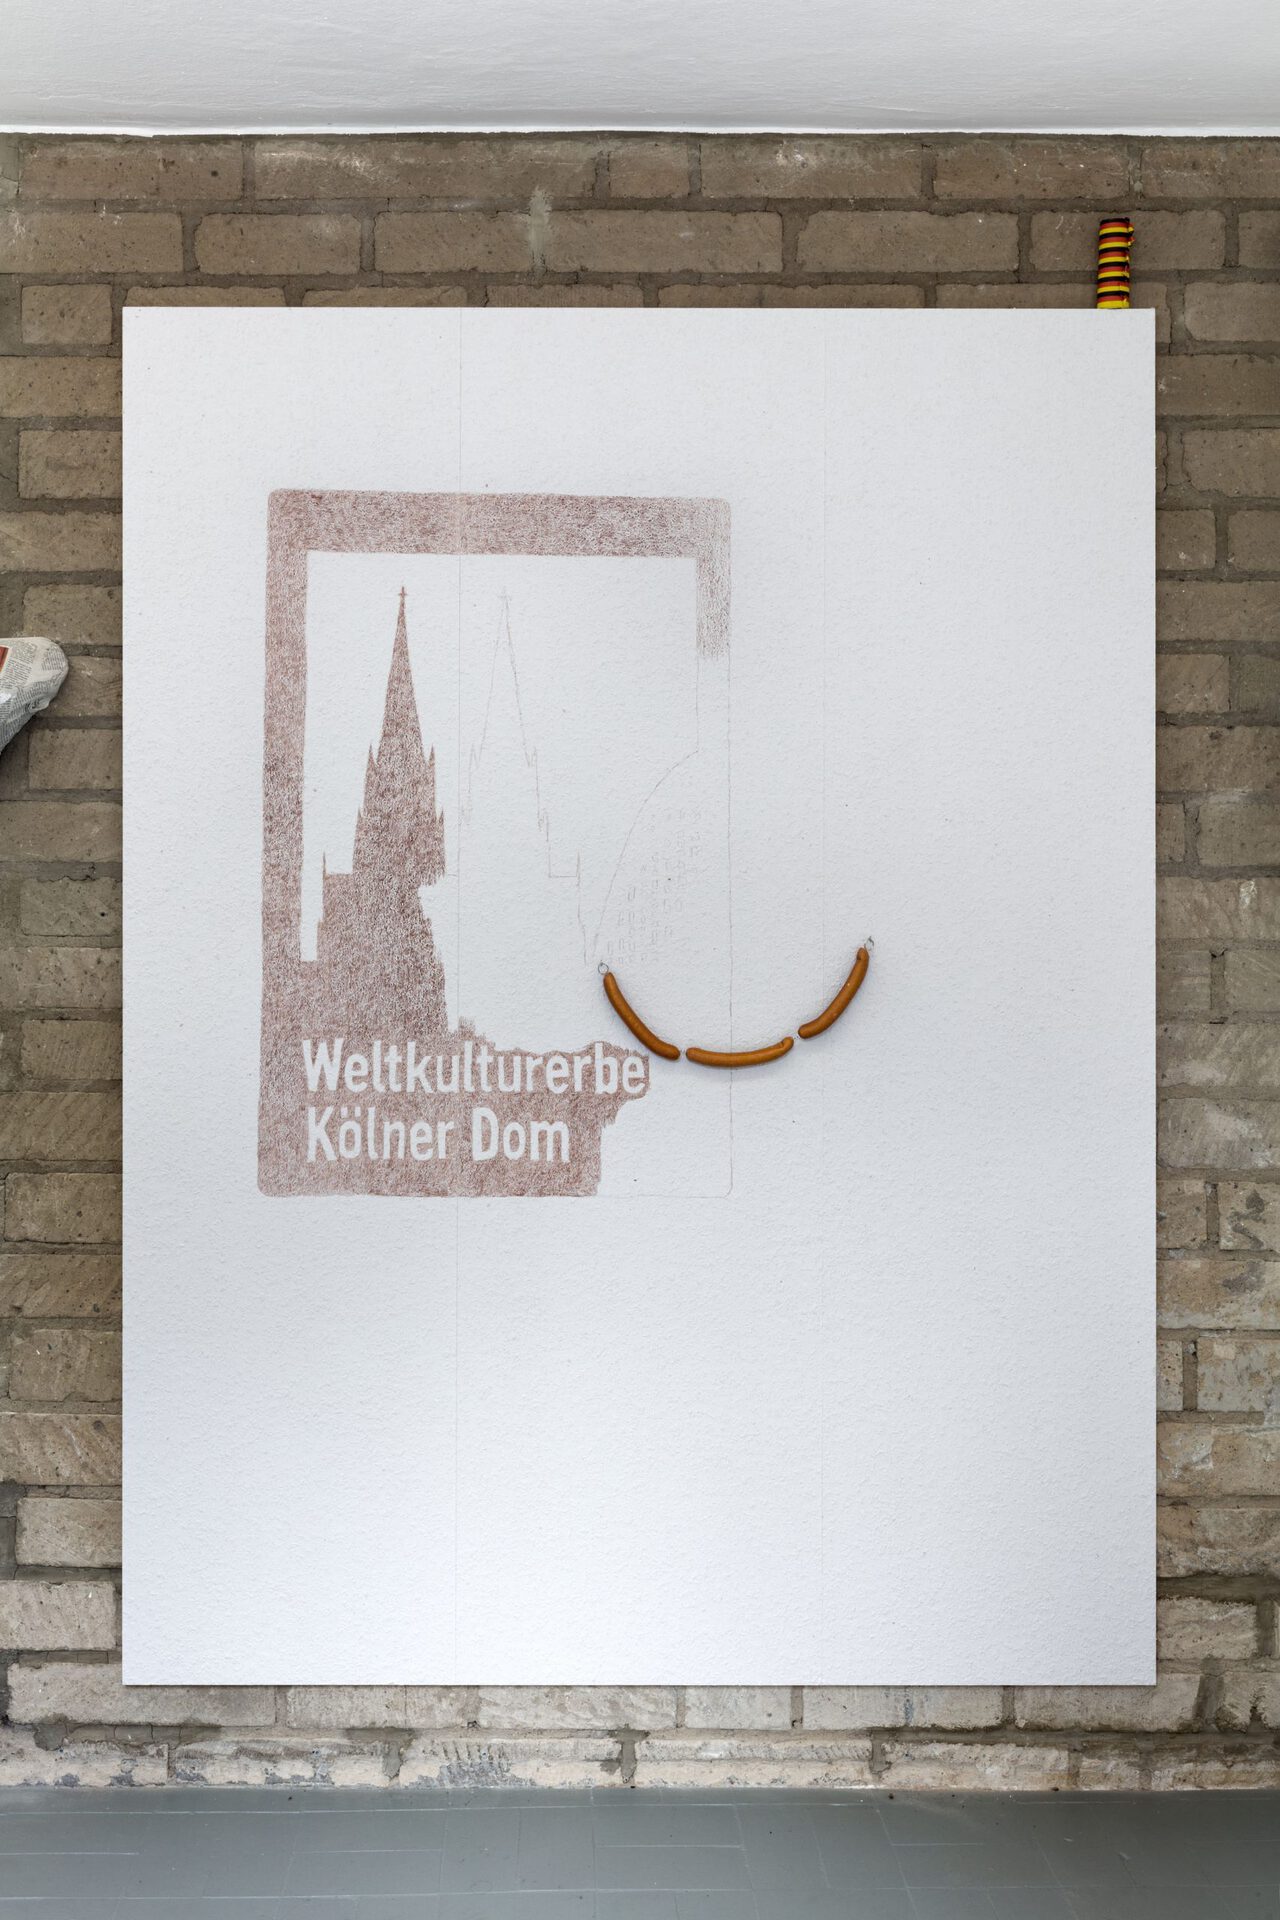 Alex Wissel, Weltkulturerbe Kölner Dom, 2021, Buntstift, Wurstatrappen, Luftschlangen auf Raufasertapete, 200 x 150 cm